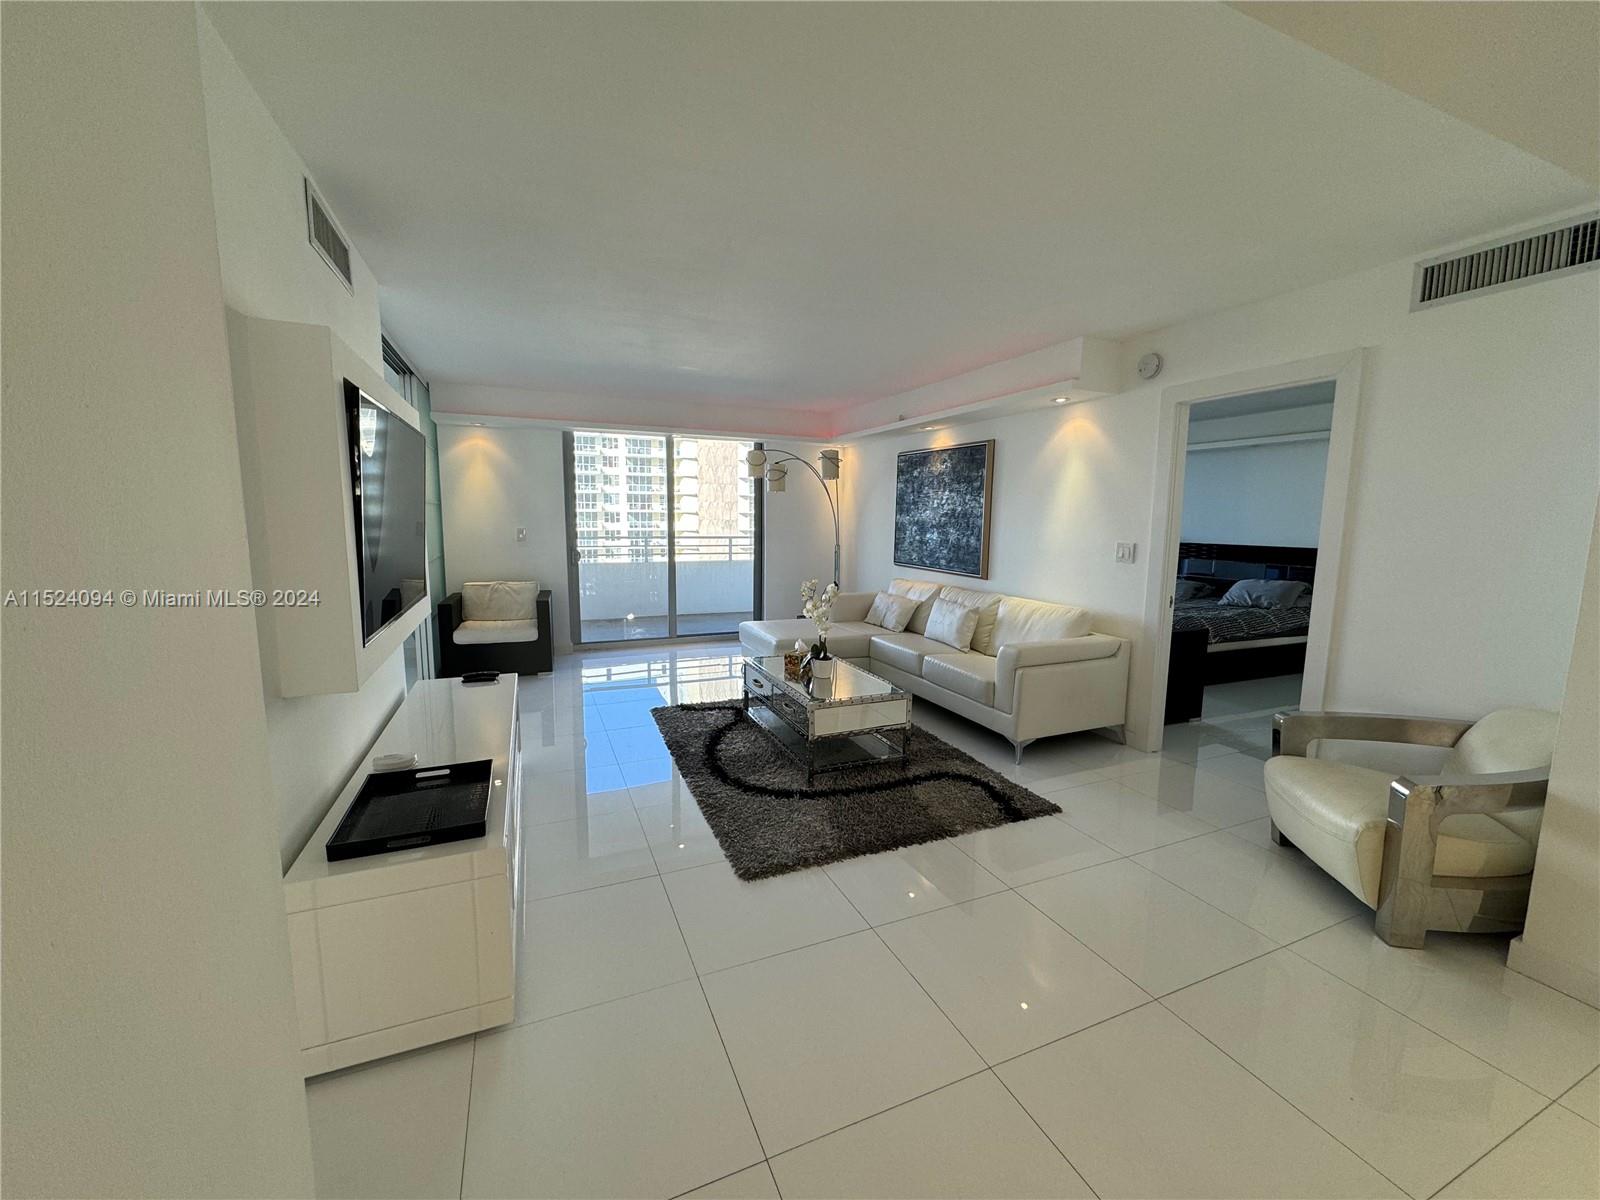 Rental Property at 5555 Collins Ave 9Y, Miami Beach, Miami-Dade County, Florida - Bedrooms: 2 
Bathrooms: 2  - $3,500 MO.